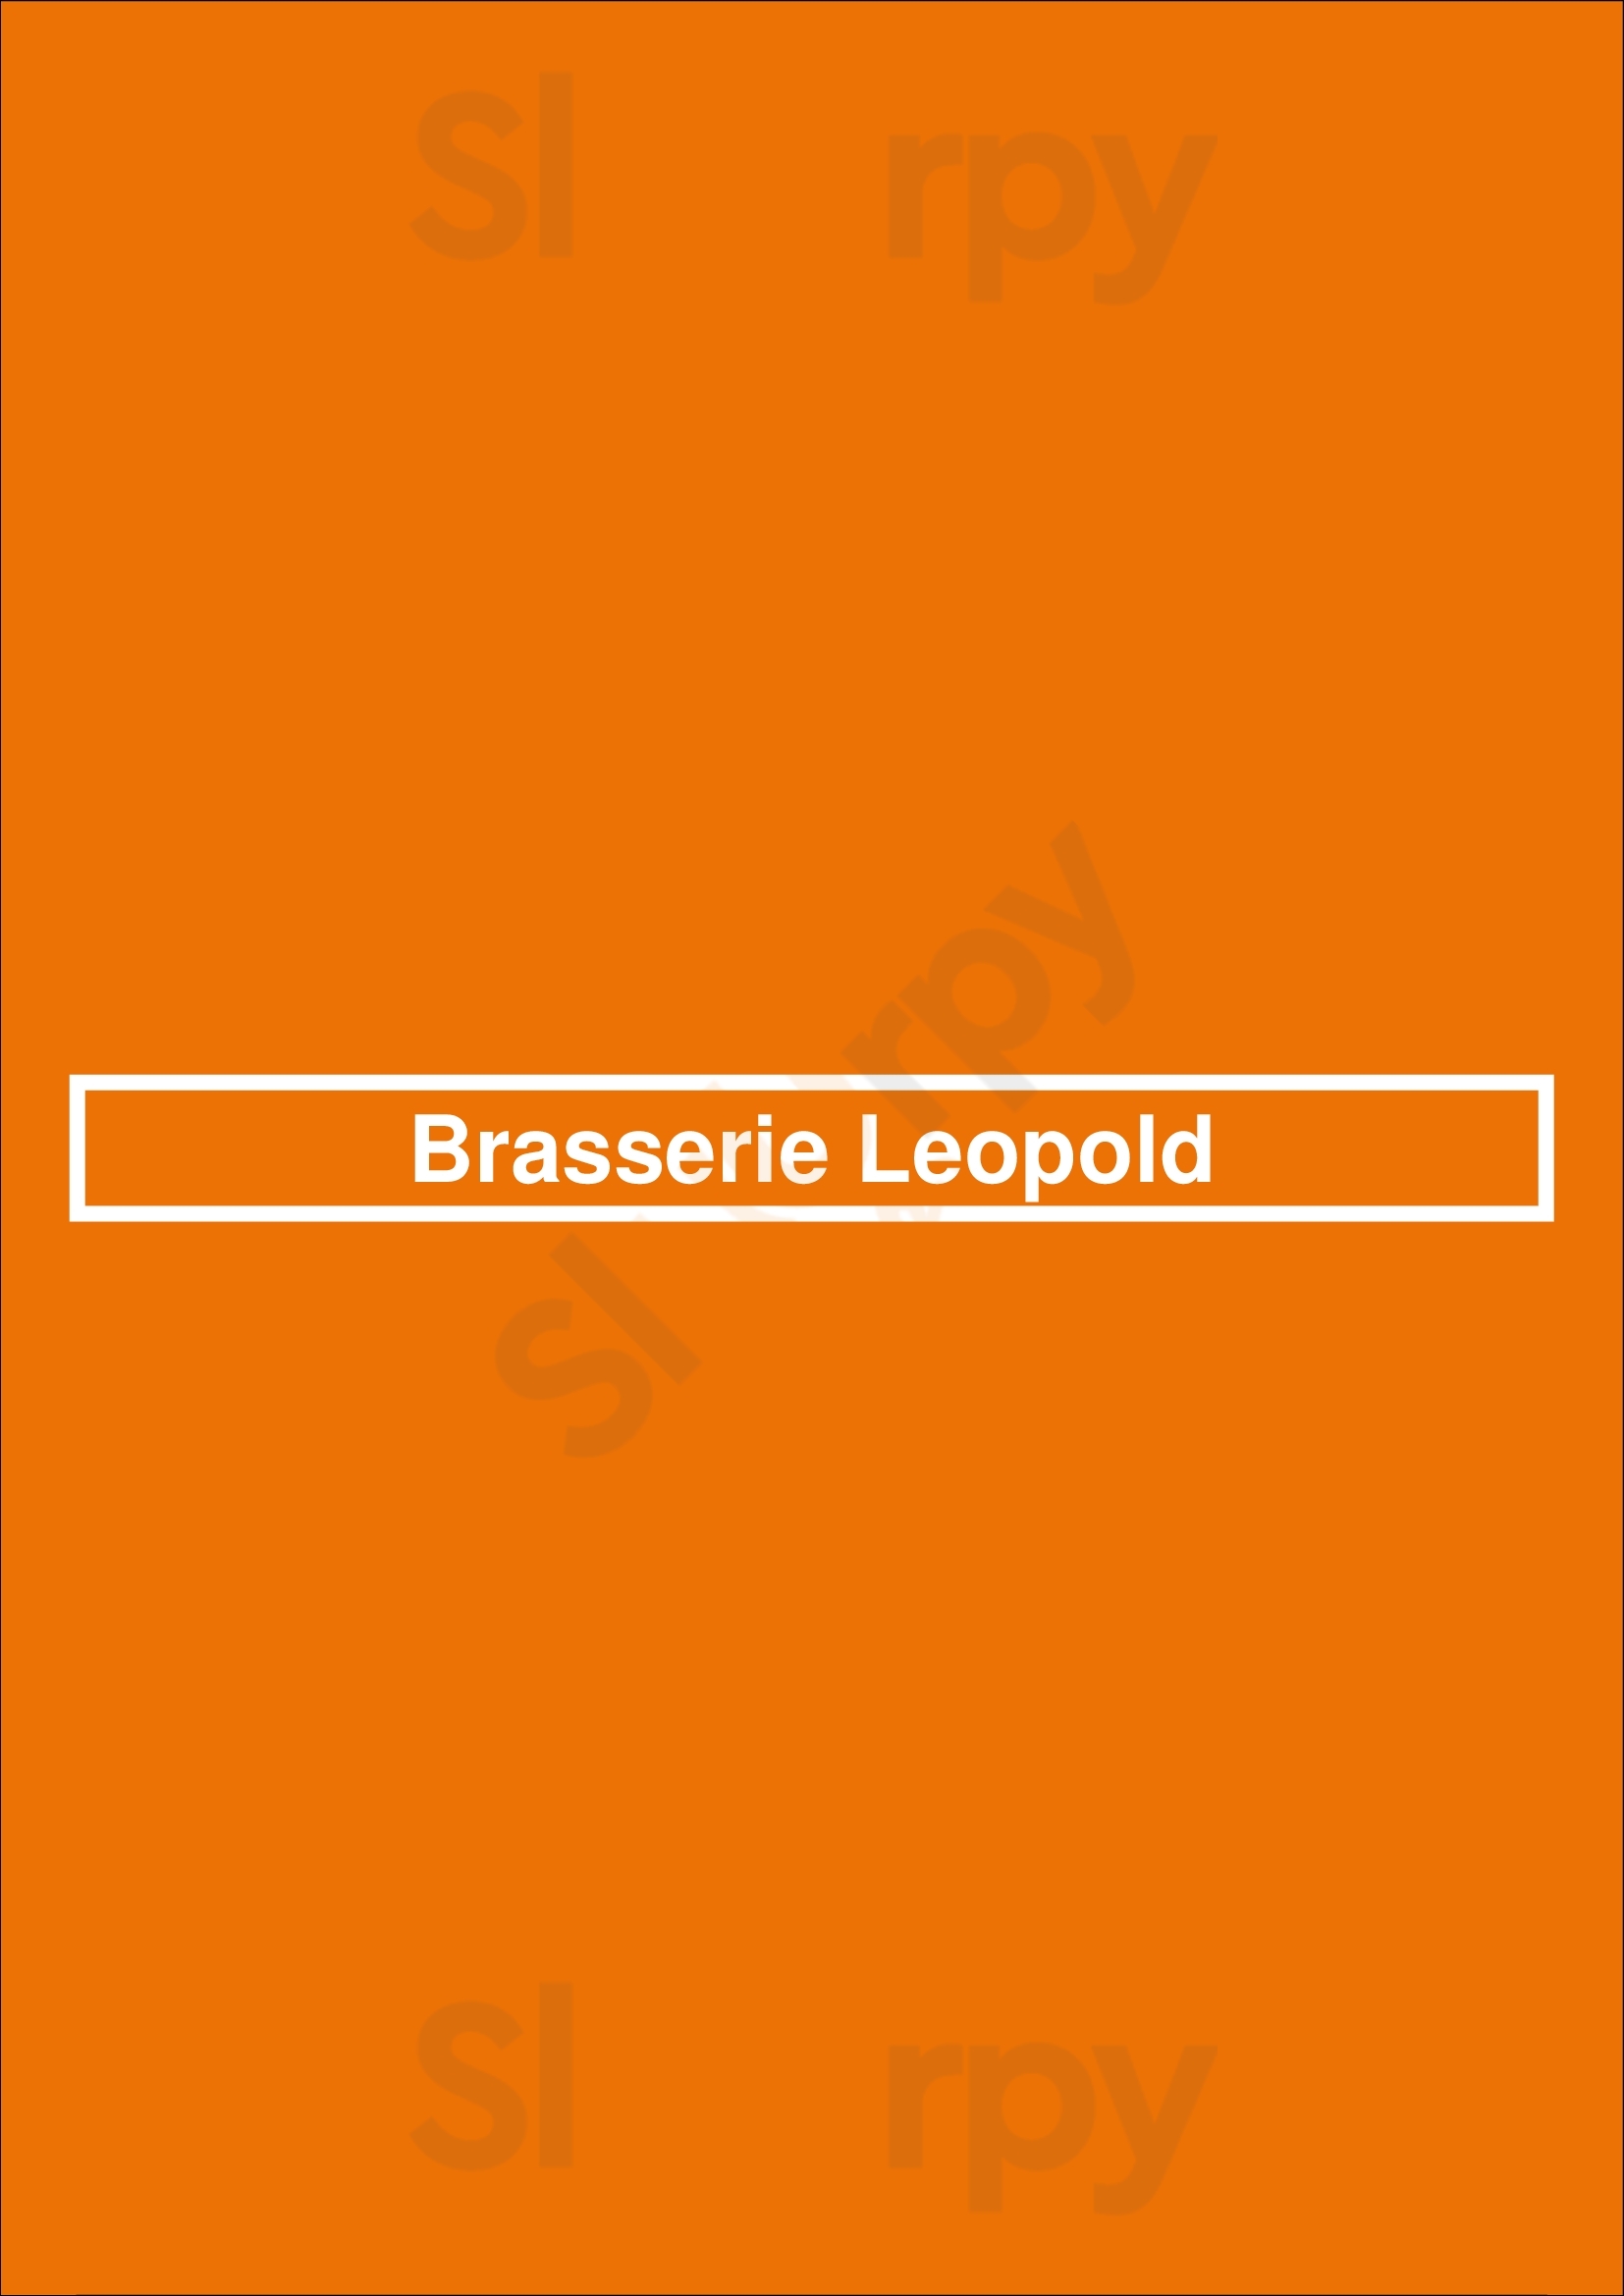 Brasserie Leopold Ixelles Menu - 1